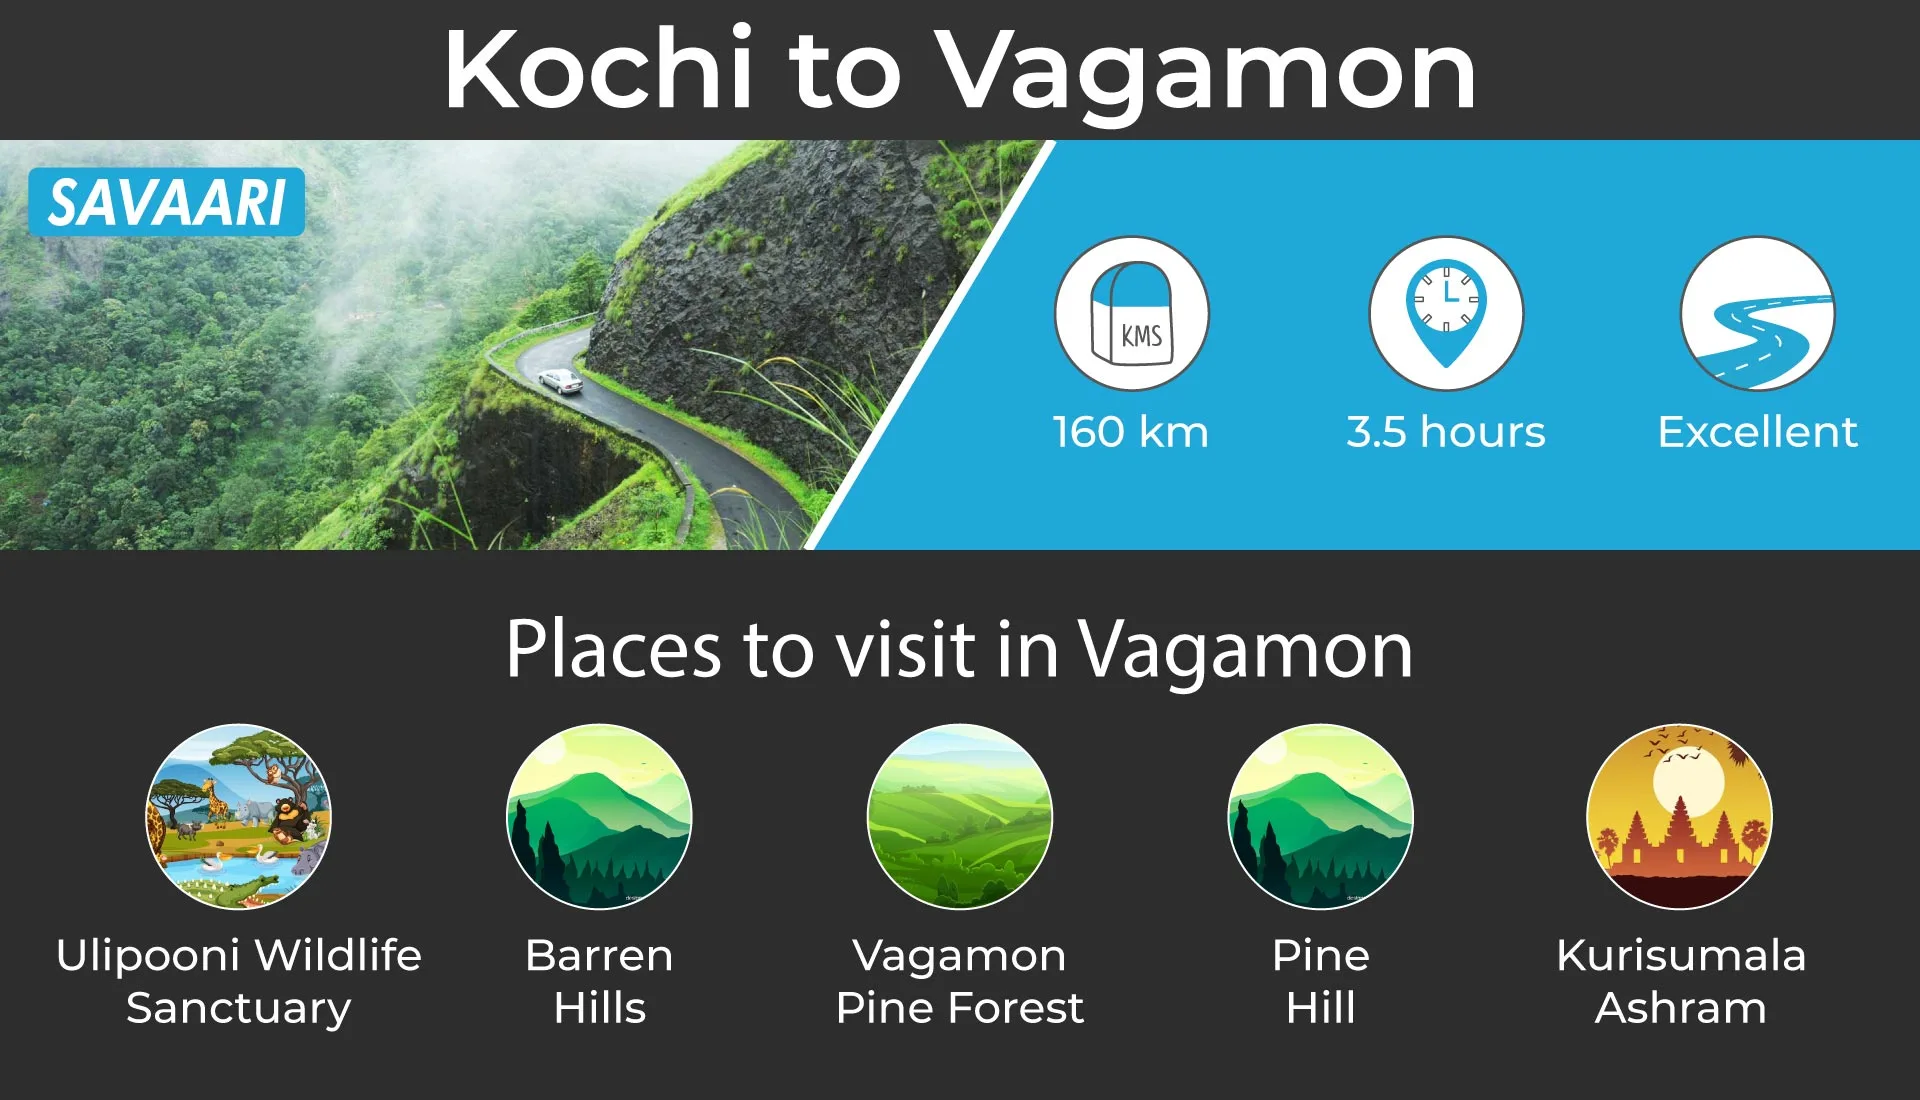 Hill station destination near kochi, vagamon